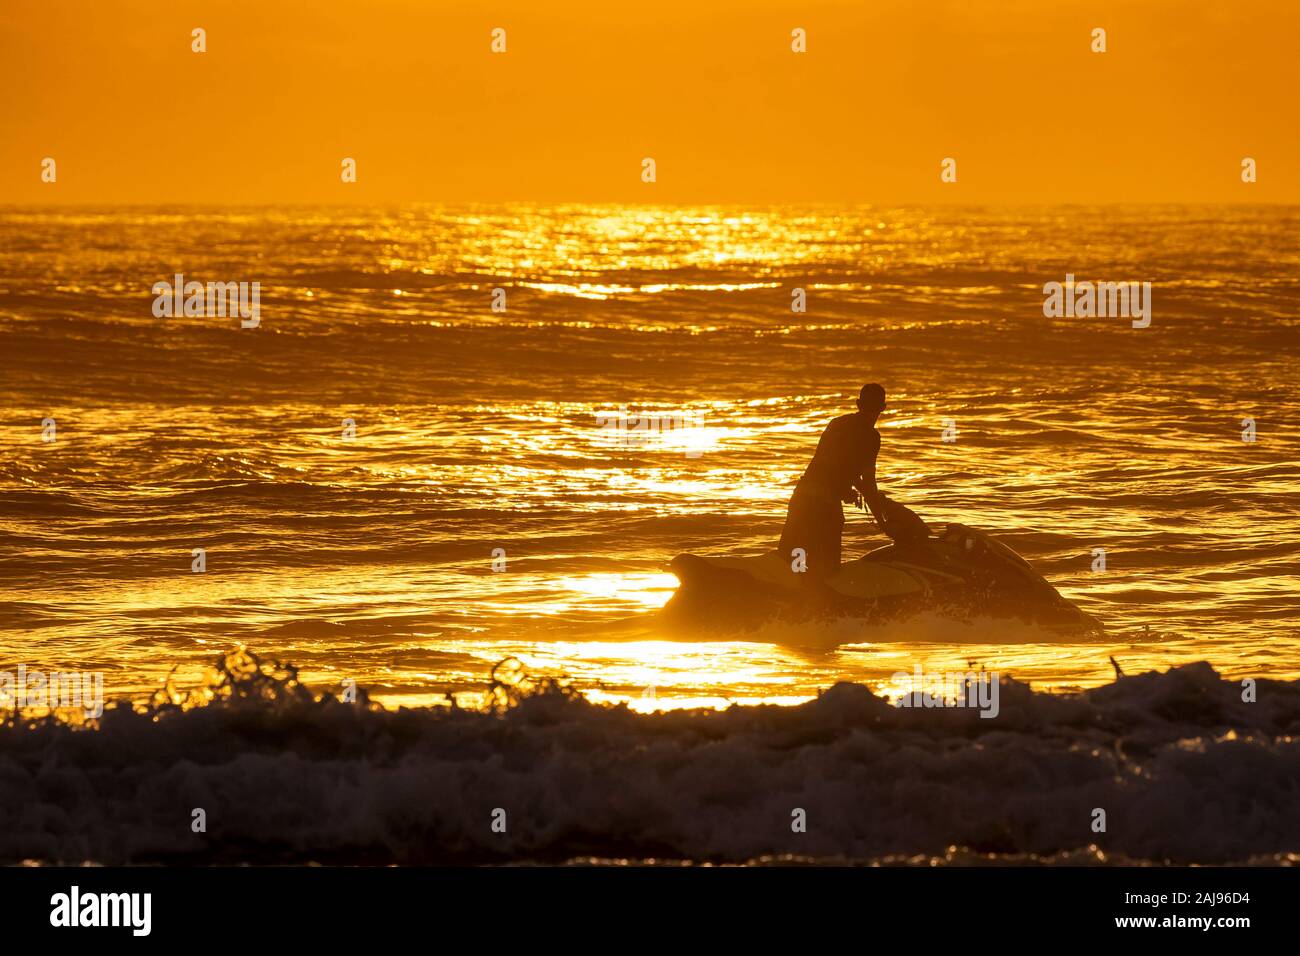 Silueta de joven montando una moto de agua y mirando hacia el amanecer en el horizonte de una playa hermosa Foto de stock